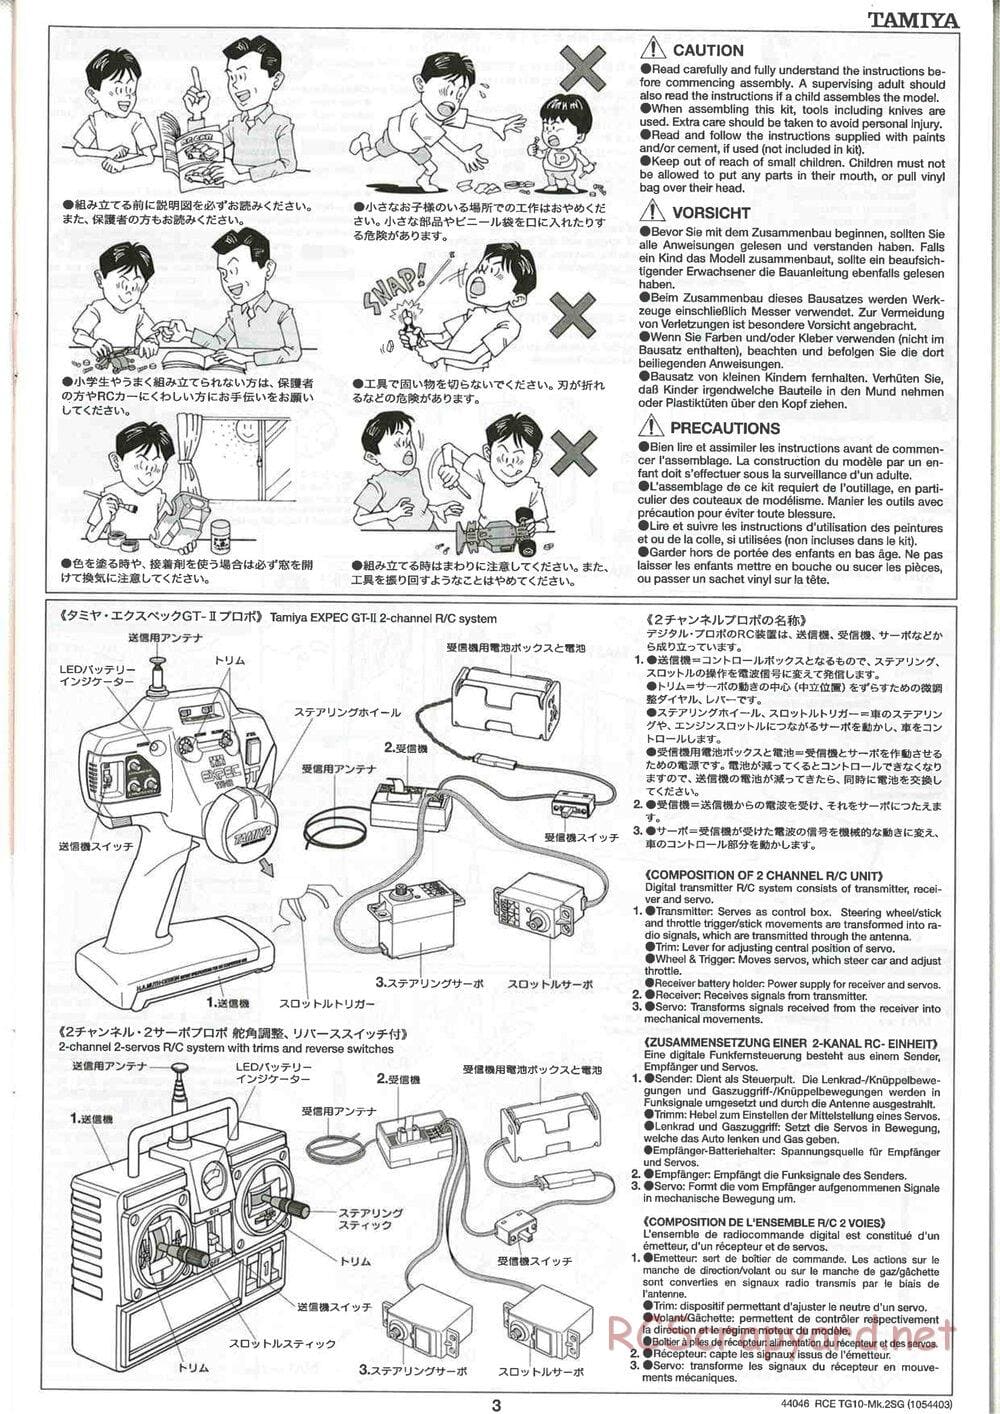 Tamiya - TG10 Mk.2SG Chassis - Manual - Page 3